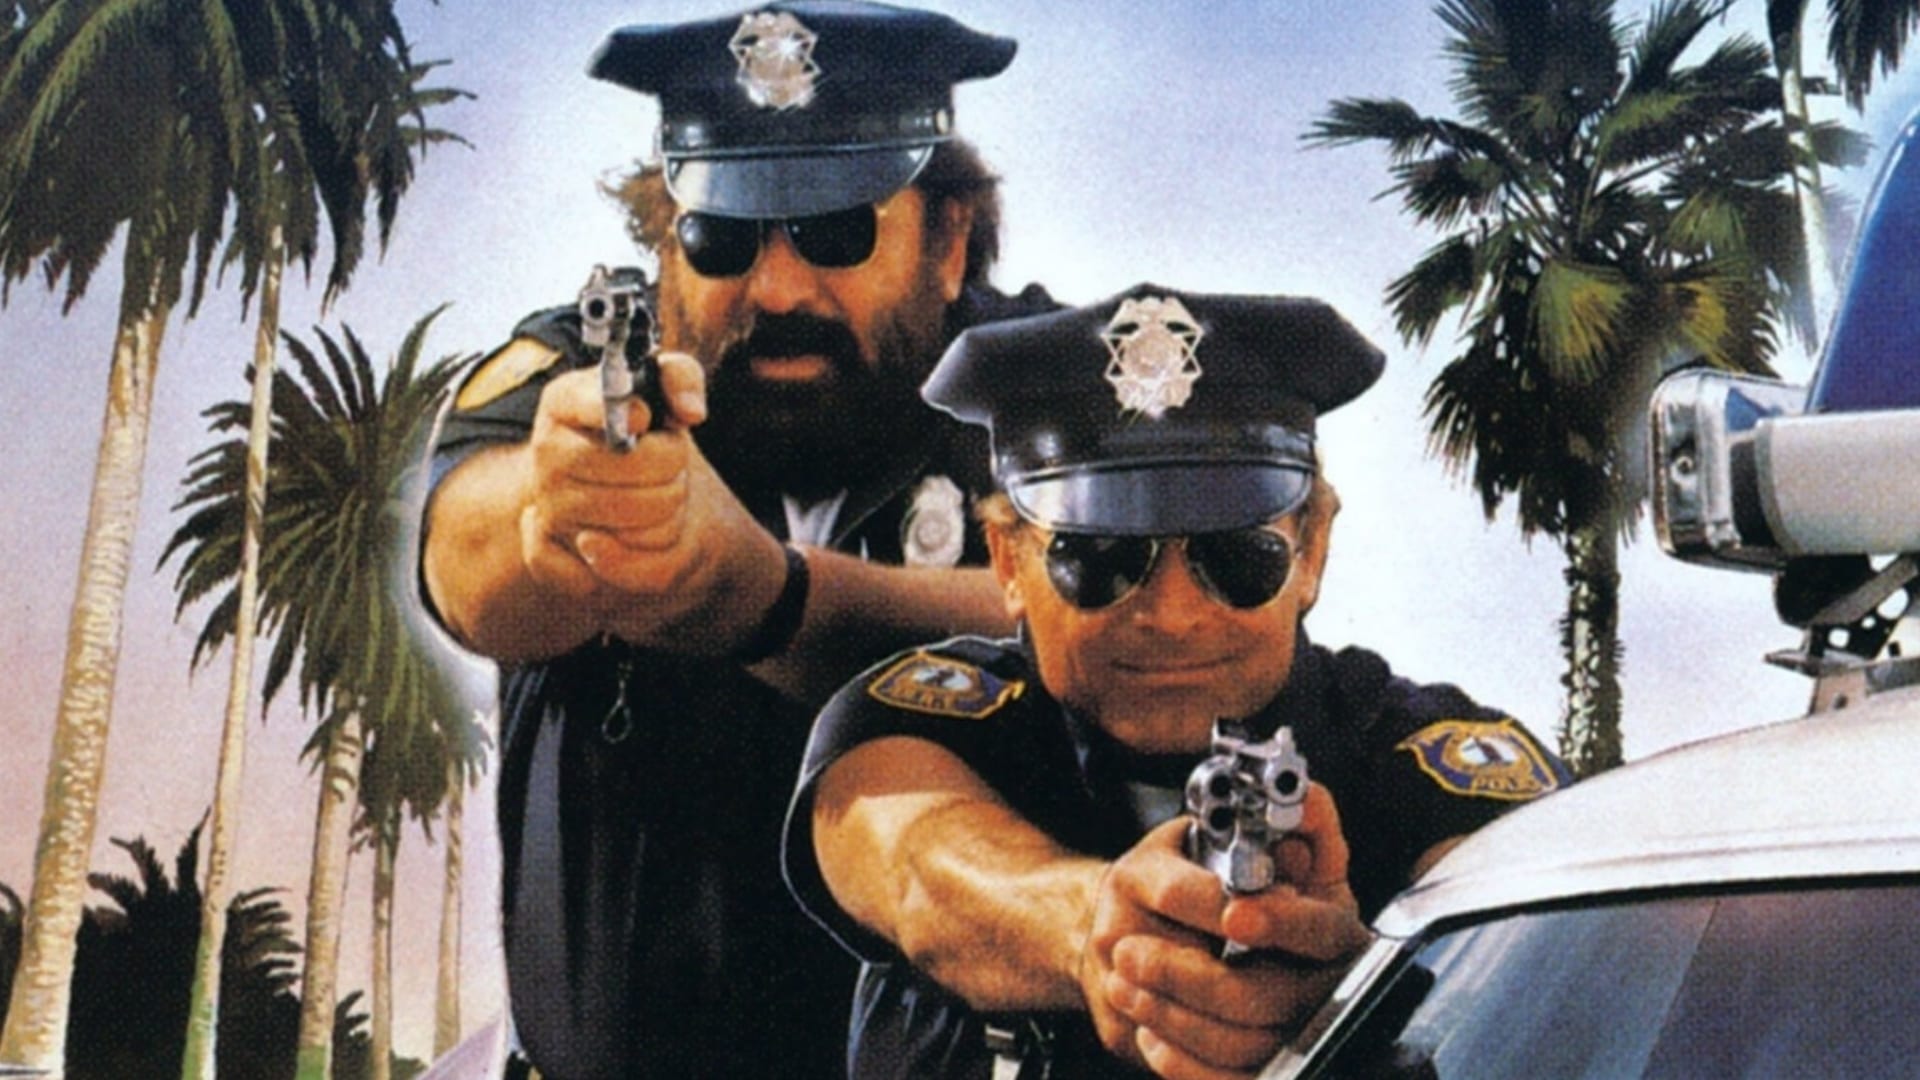 Dos súper policías en Miami